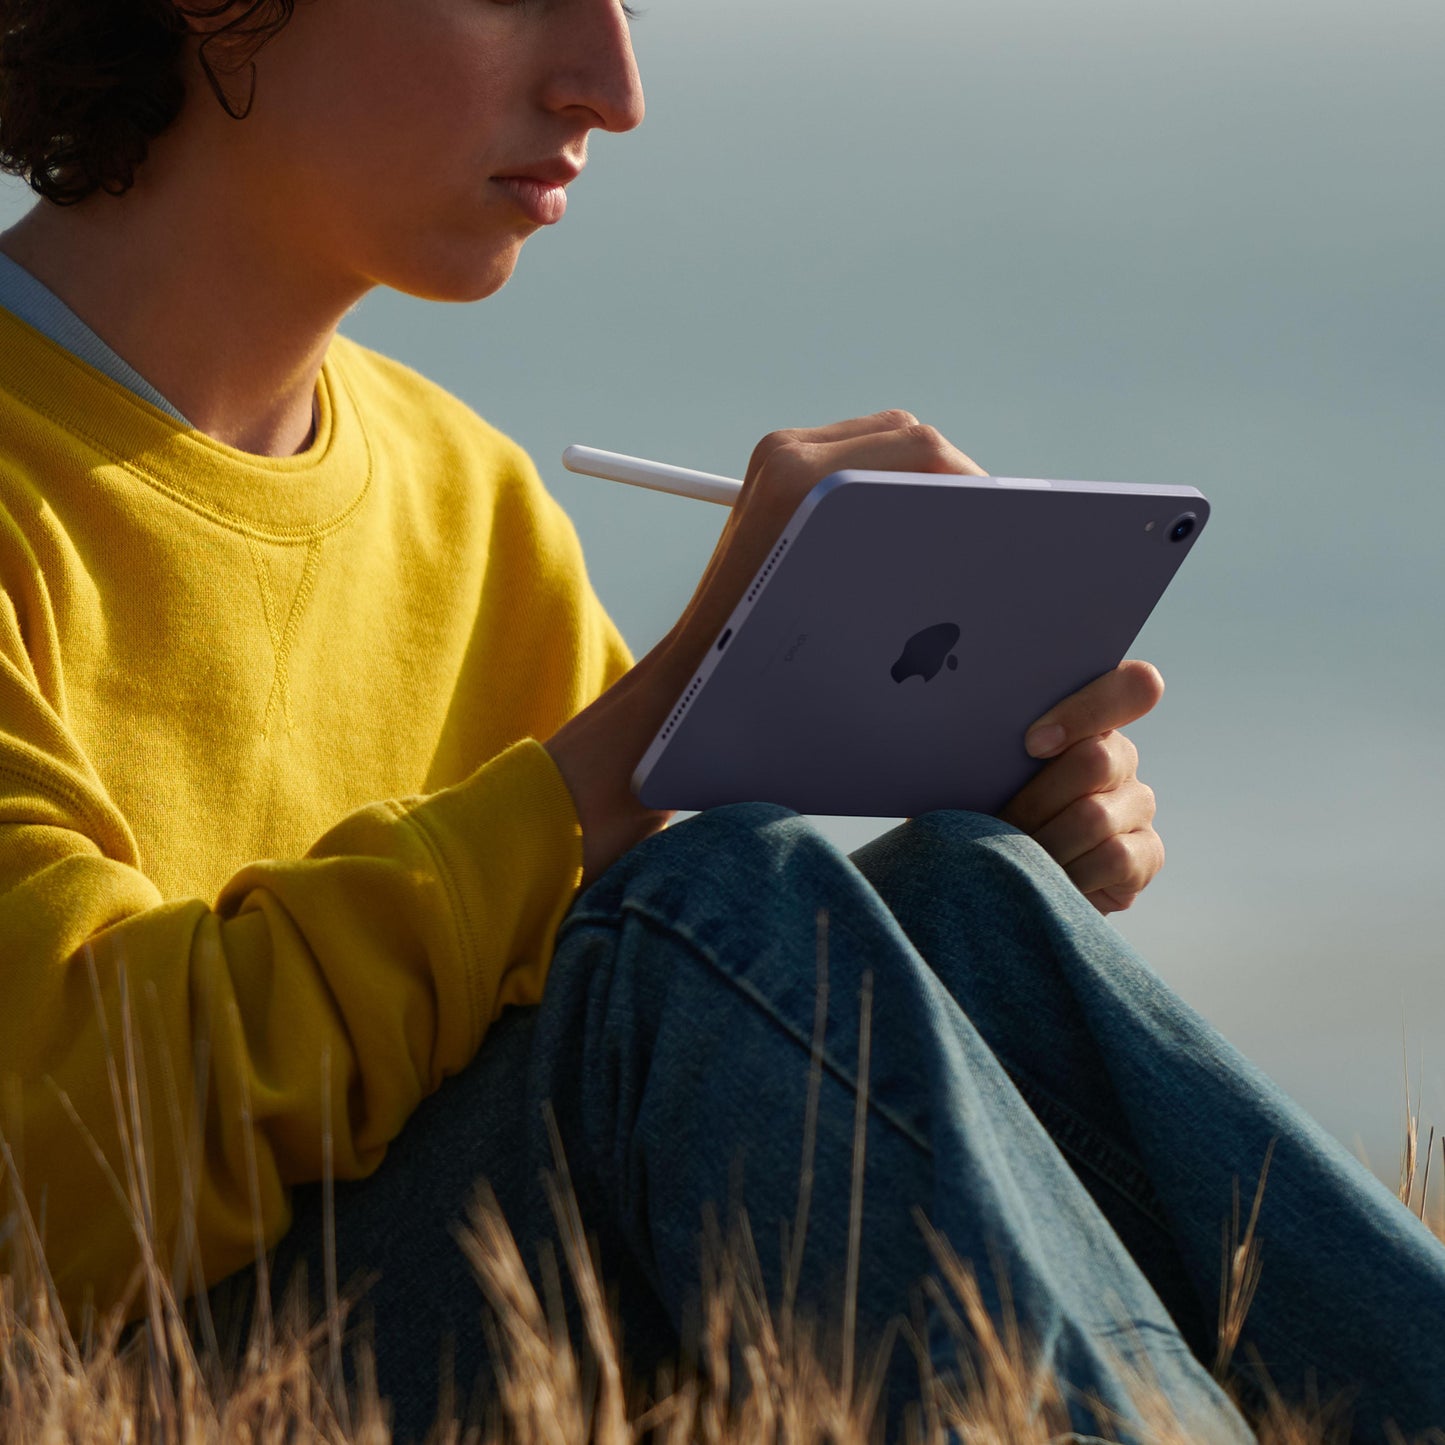 2021 iPad mini Wi-Fi + شريحة 256 GB - وردي (الجيل السادس)